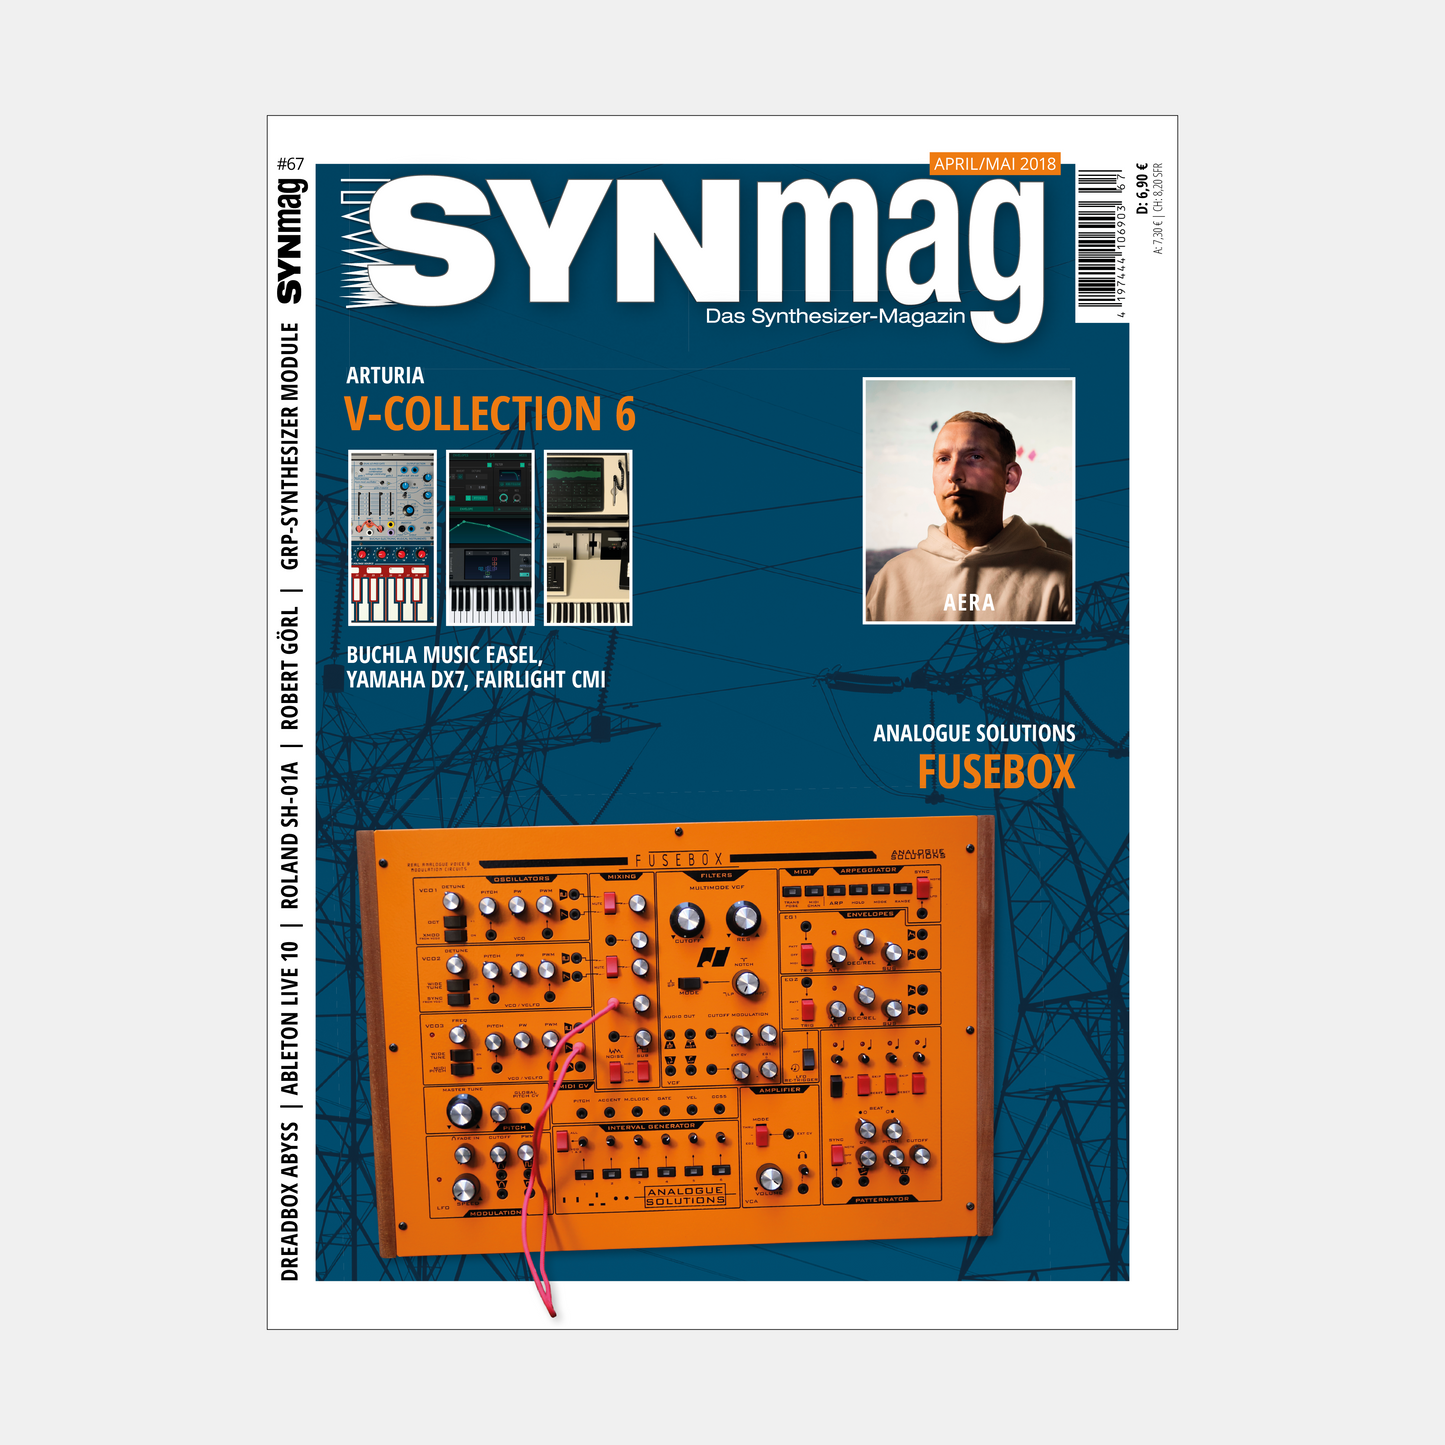 Synmag | Ausgaben 66 bis 70 im Paket | ePaper